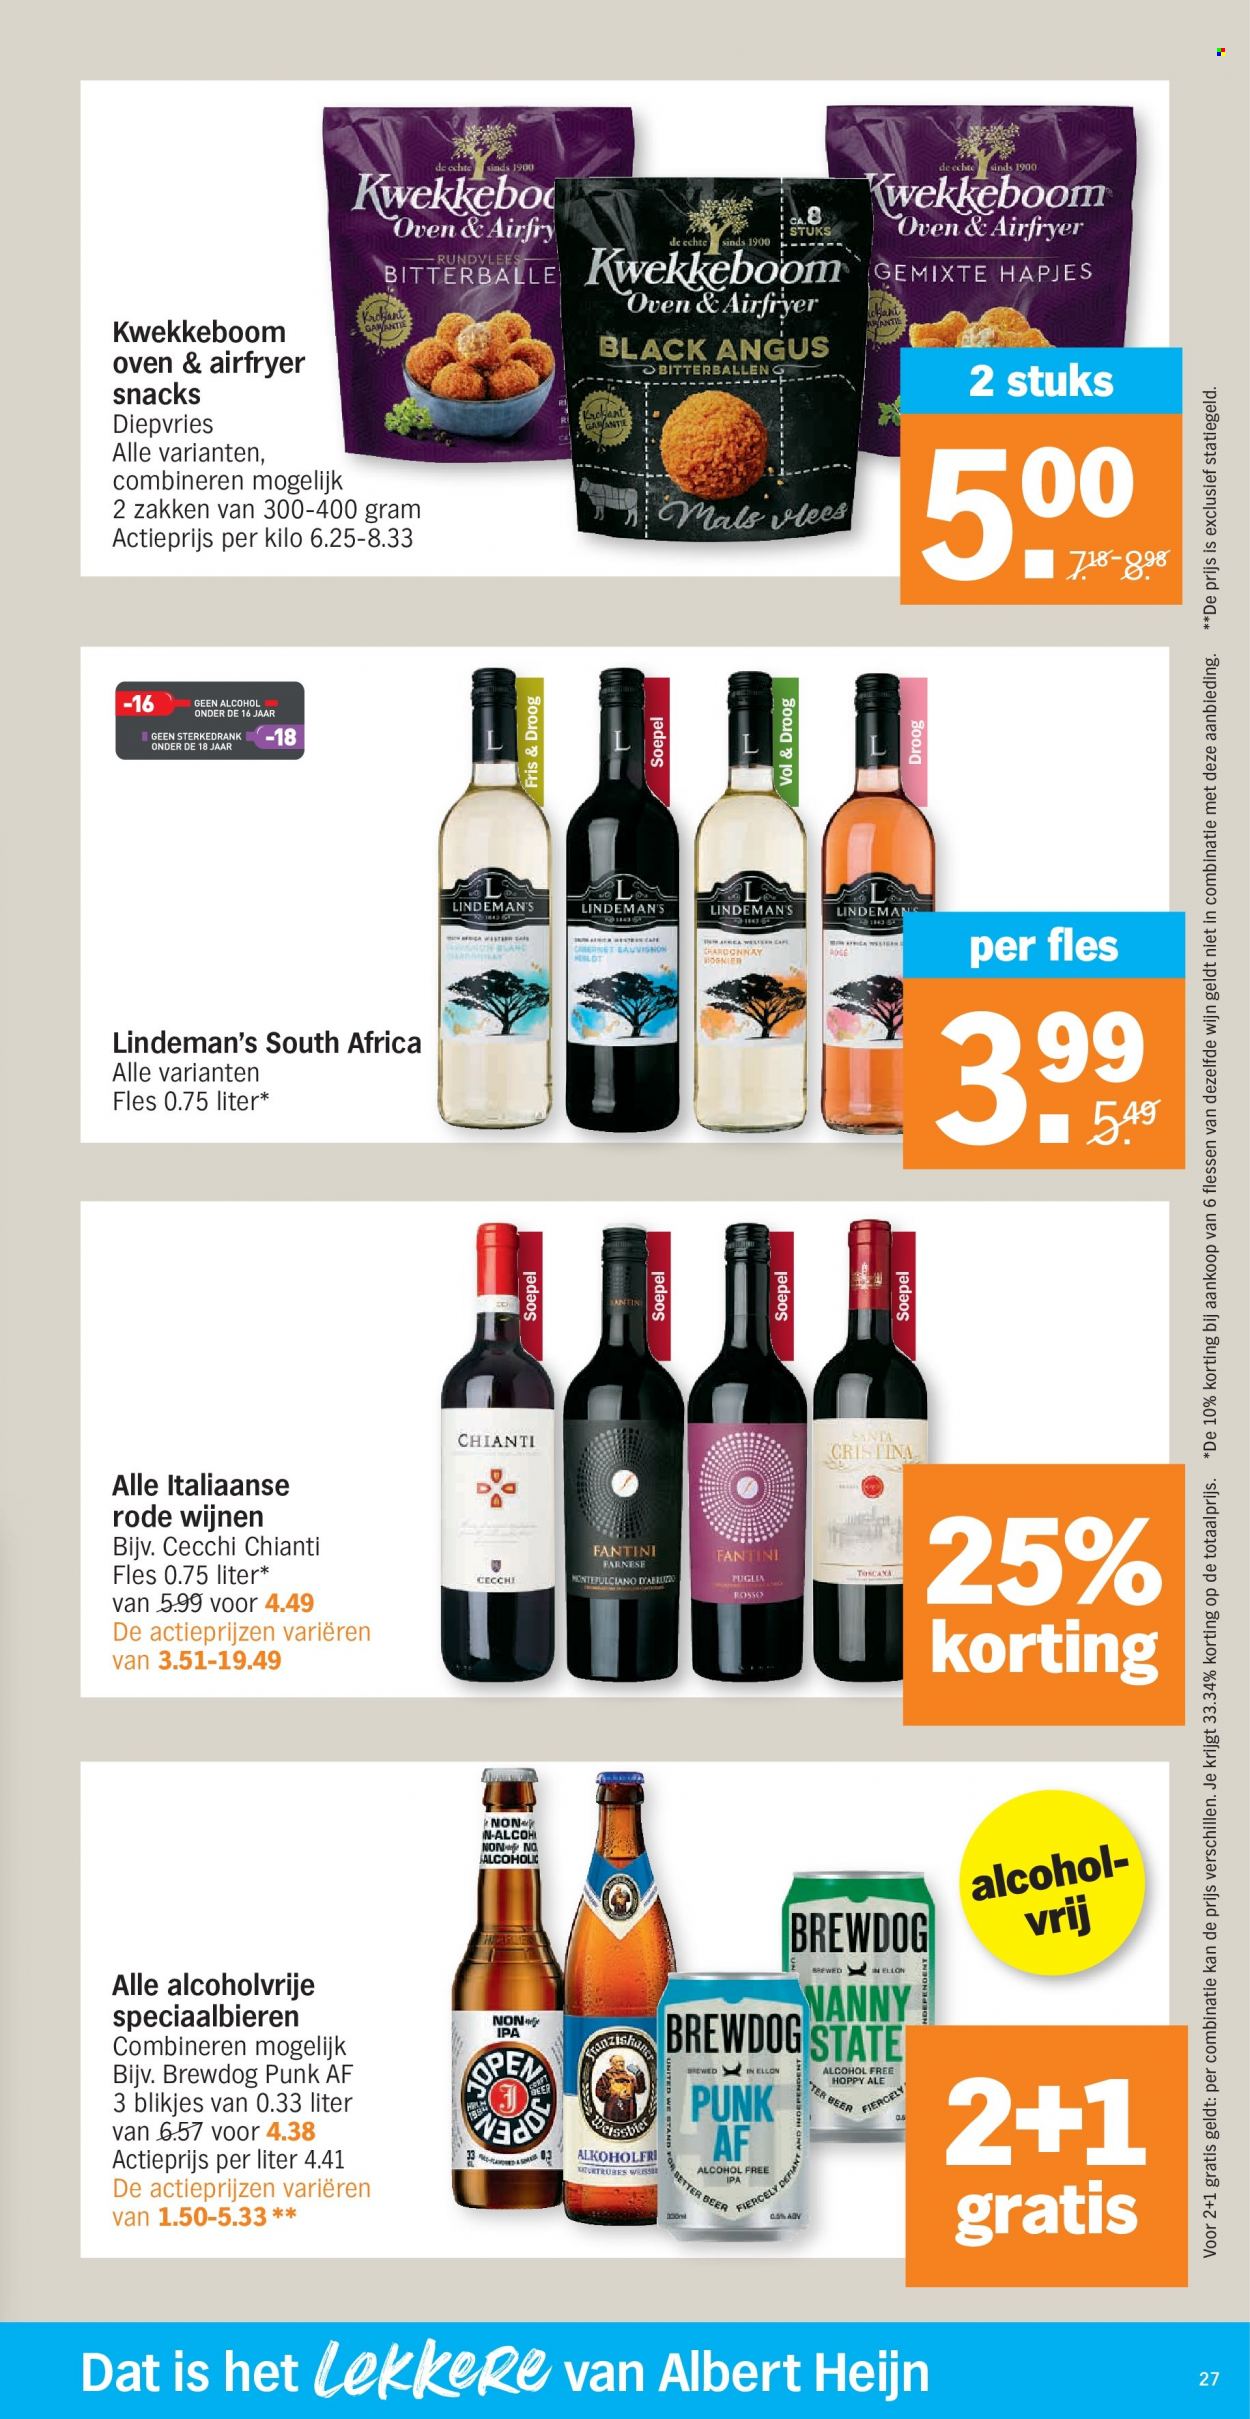 thumbnail - Albert Heijn-aanbieding - 17/01/2022 - 23/01/2022 -  producten in de aanbieding - Kwekkeboom, Chianti, wijn. Pagina 27.